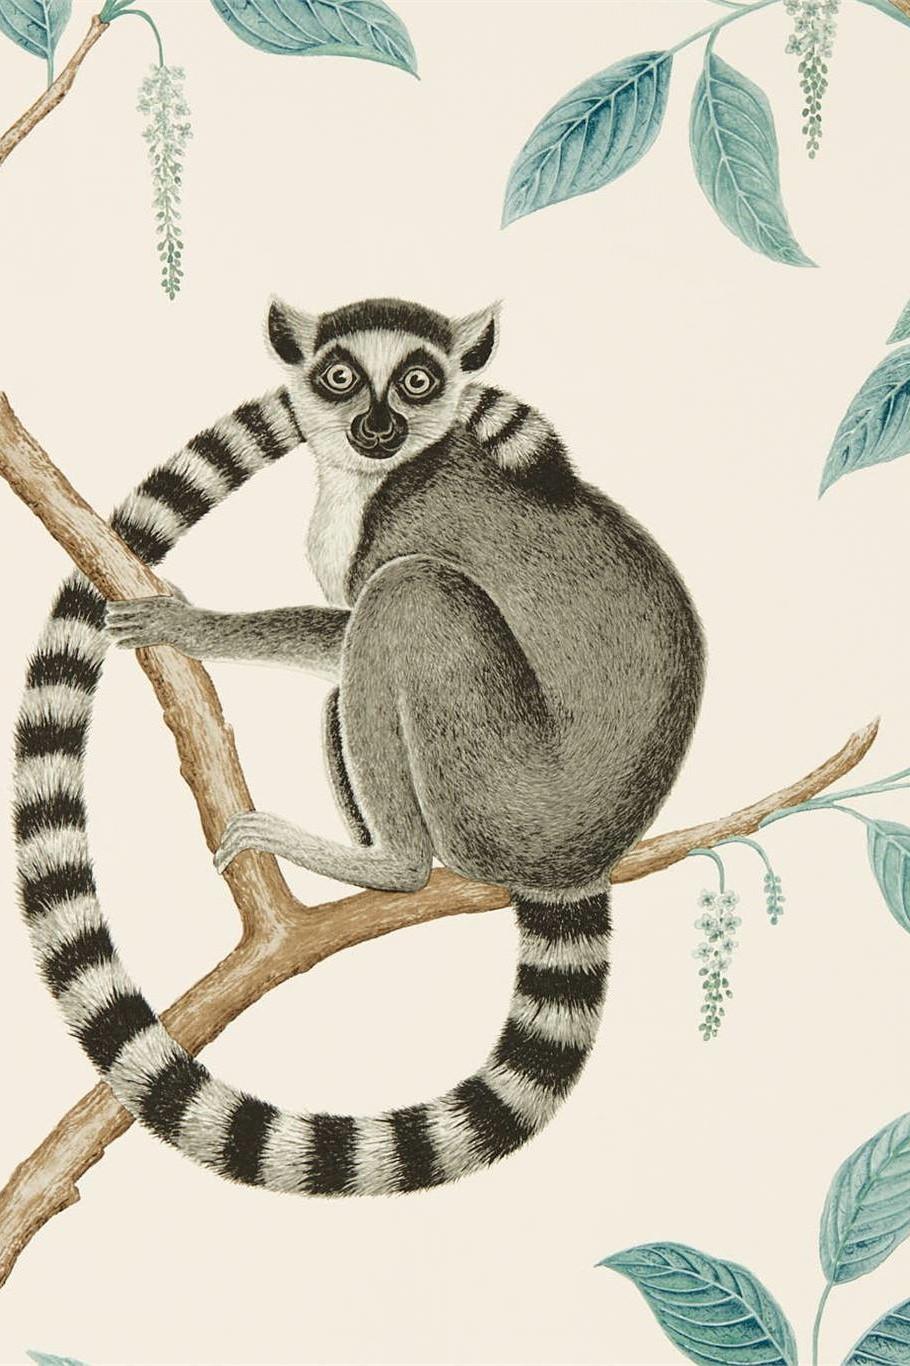 sanderson-glasshouse-ringtailed-lemur-wallpaper-dglw216665